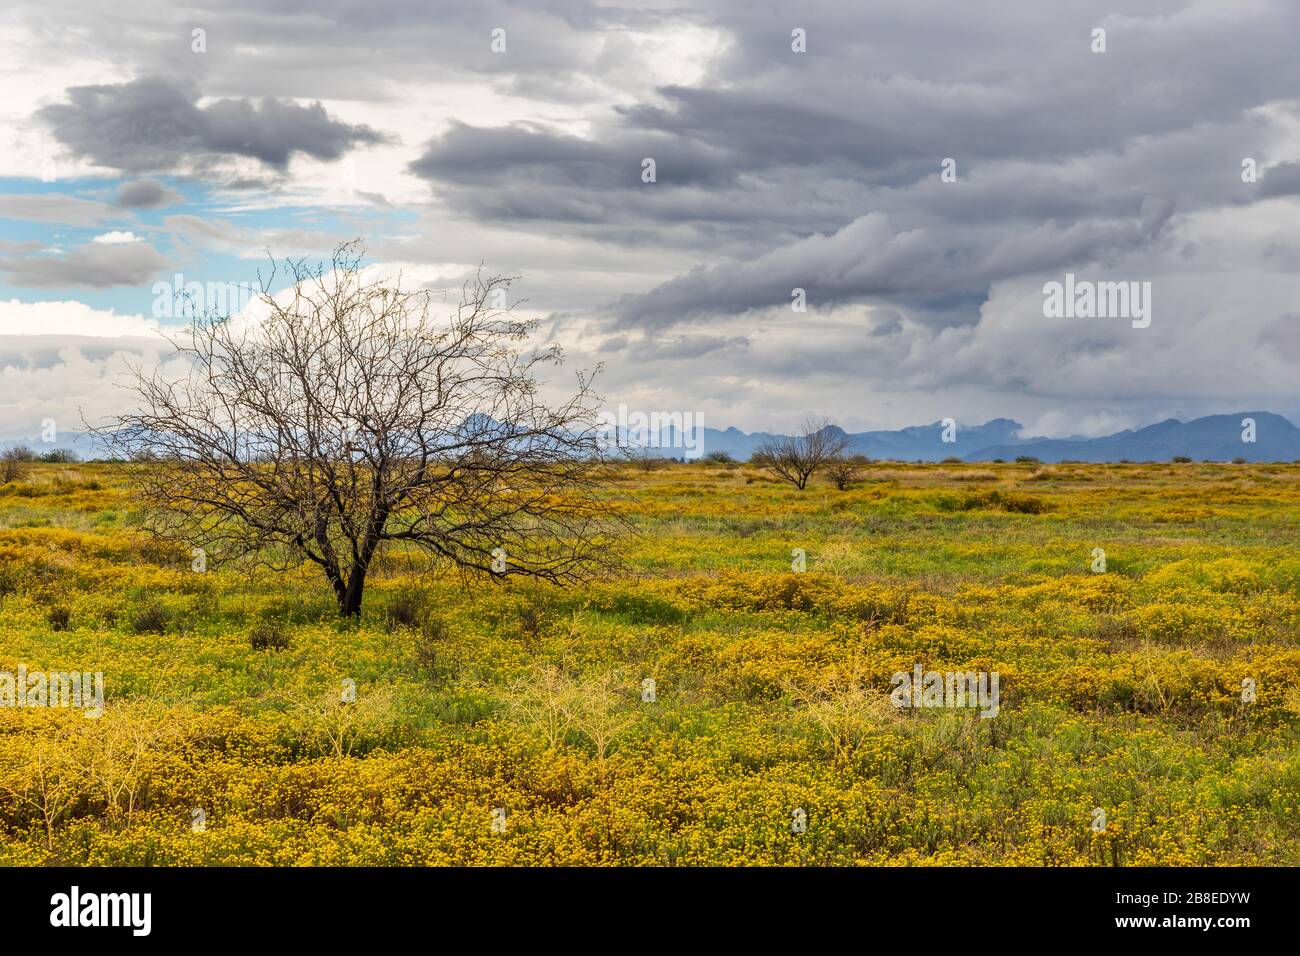 Barren albero in campo di fiori gialli, nel deserto di sonora dell'Arizona a ovest di Phoenix. Tempesta nuvole sopra. Foto Stock